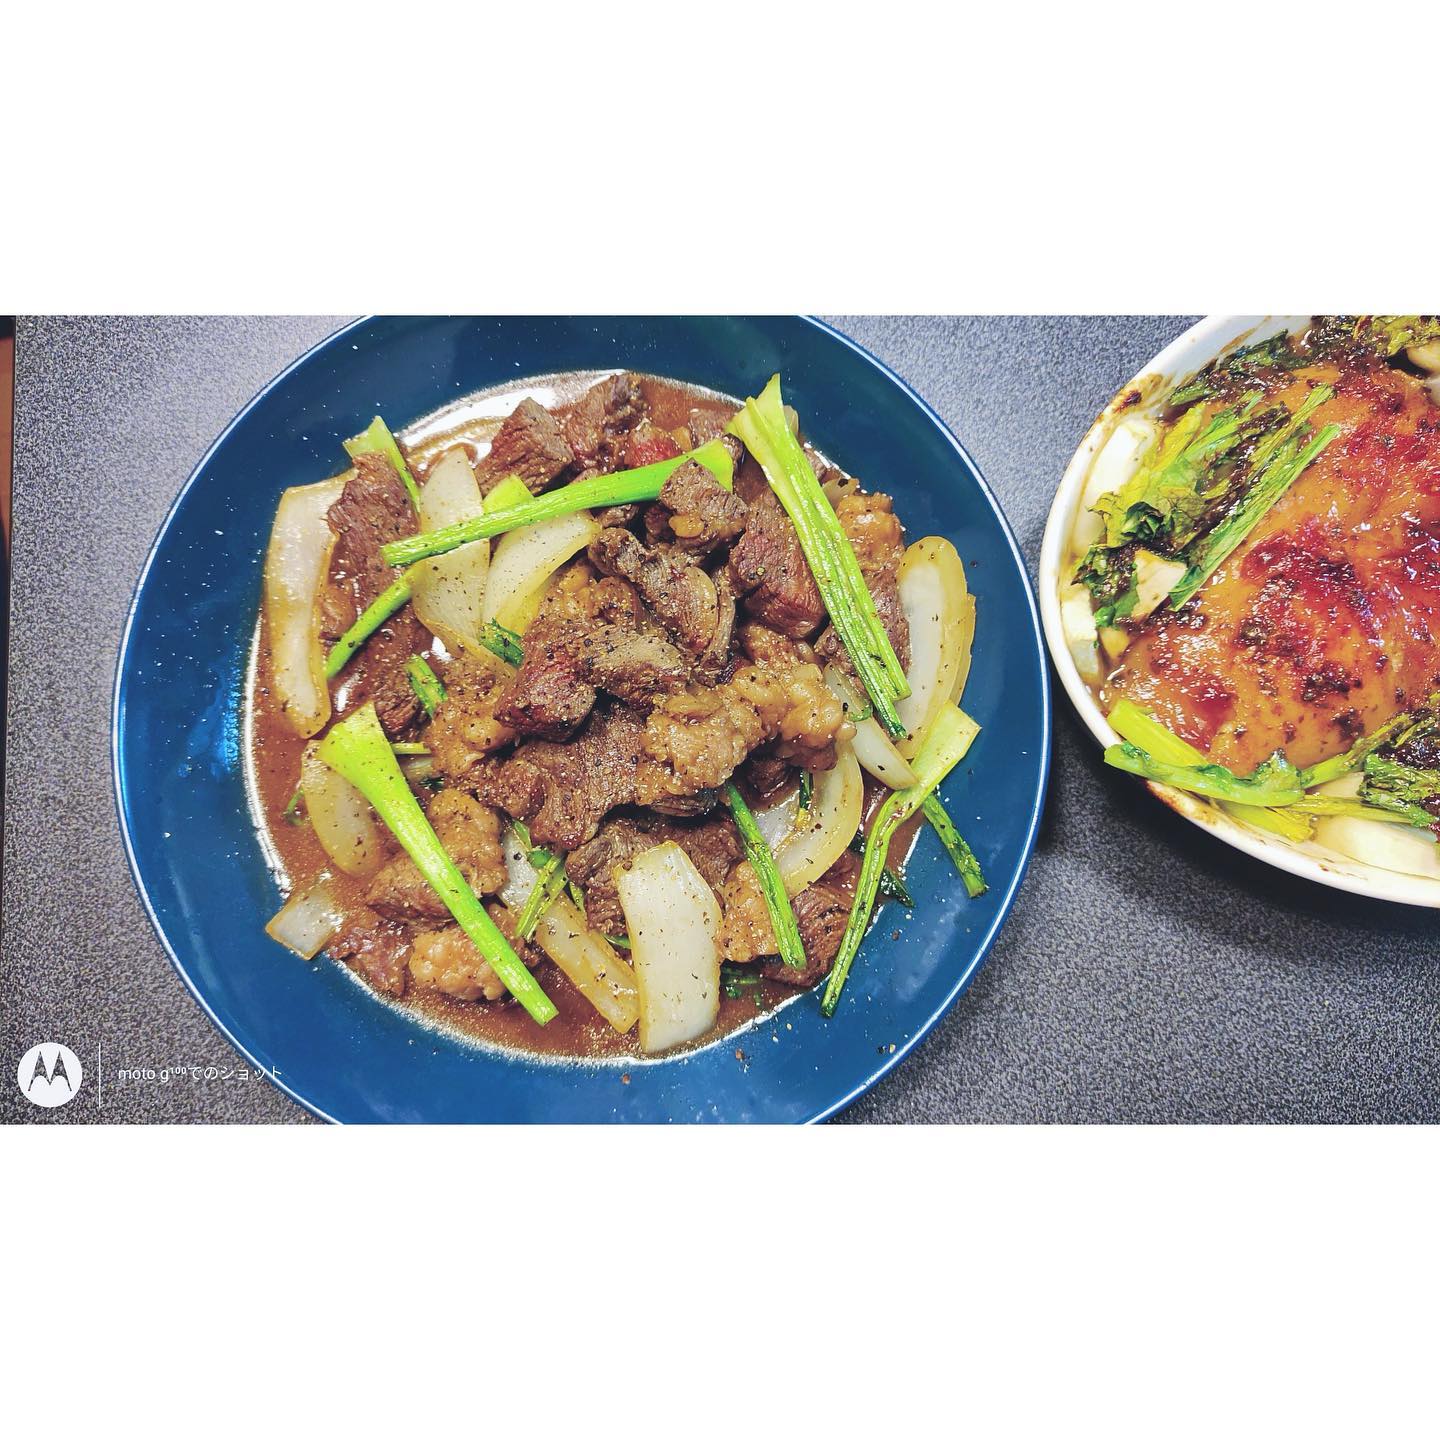 シェイキングビーフ Bo luc lac
Vietnamese Shaking beef

ベトナム/クメール料理。私のレシピはブラックペッパーが多分通常の2.5倍🔥たまらんです。
＊
More recipes on my blog🙇🏻‍♀️
Blogでレシピ書いてます、プロフィールから🙇🏻‍♀️
@akoscookbook
＊

#レシピ #ブログ初心者 #料理すきな人と繋がりたい #料理好きな人と繋がりたい #おうちごはん部 　#ごはん記録 #クッキングラマー#recipeoftheday #foodporn #foodblogger #foodstagram #likeforlikes #photooftheday #instalike #yummyyummy #eatright #cookingathome #instafood #japanesefood #yummy #dinner #homemadecooking  #ベトナム料理 #エスニック料理 #shakingbeef #boluclac #vietnamesefood #kumer